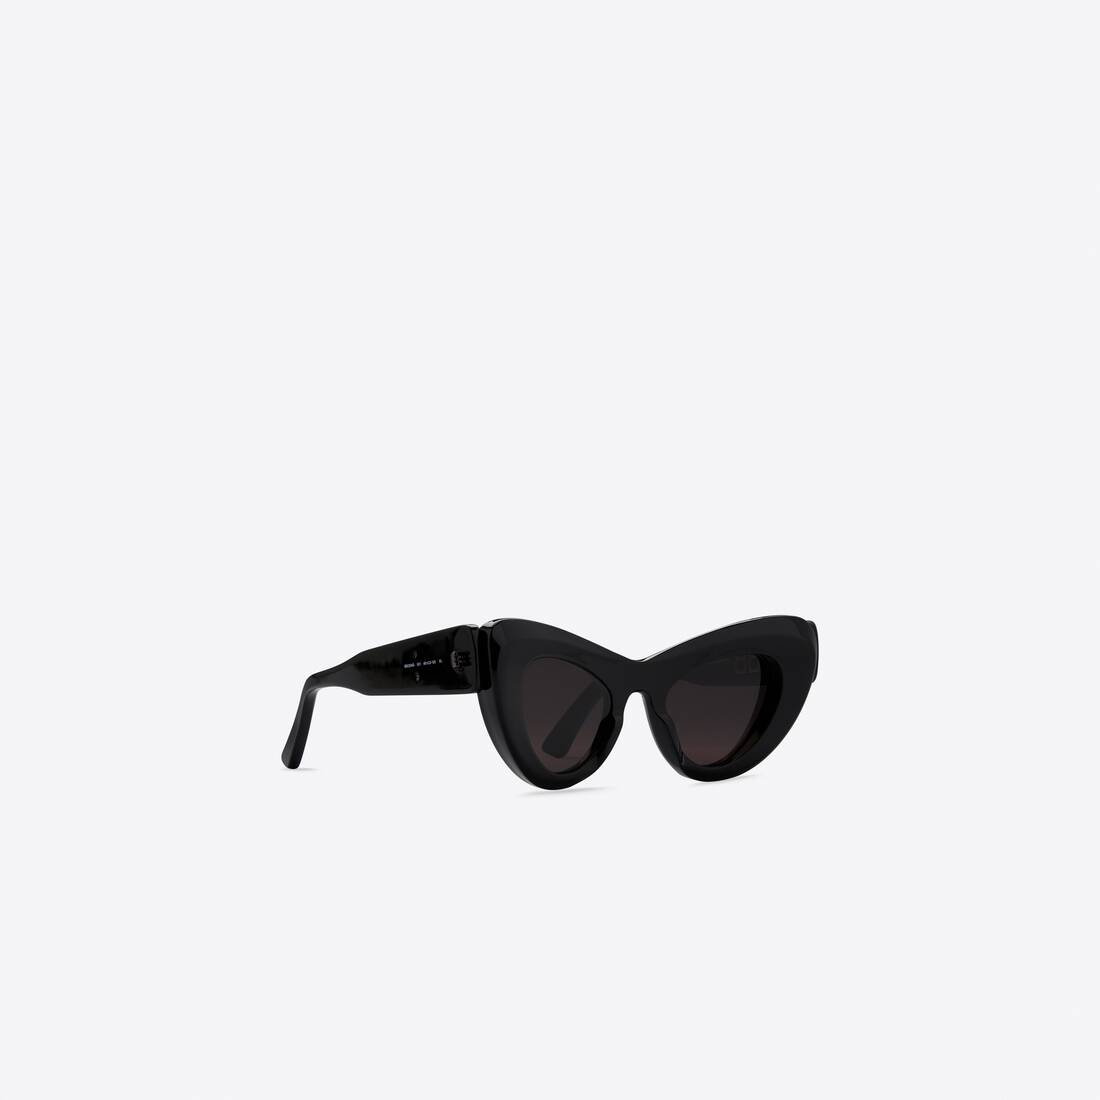 Mega Cat Sunglasses in Black